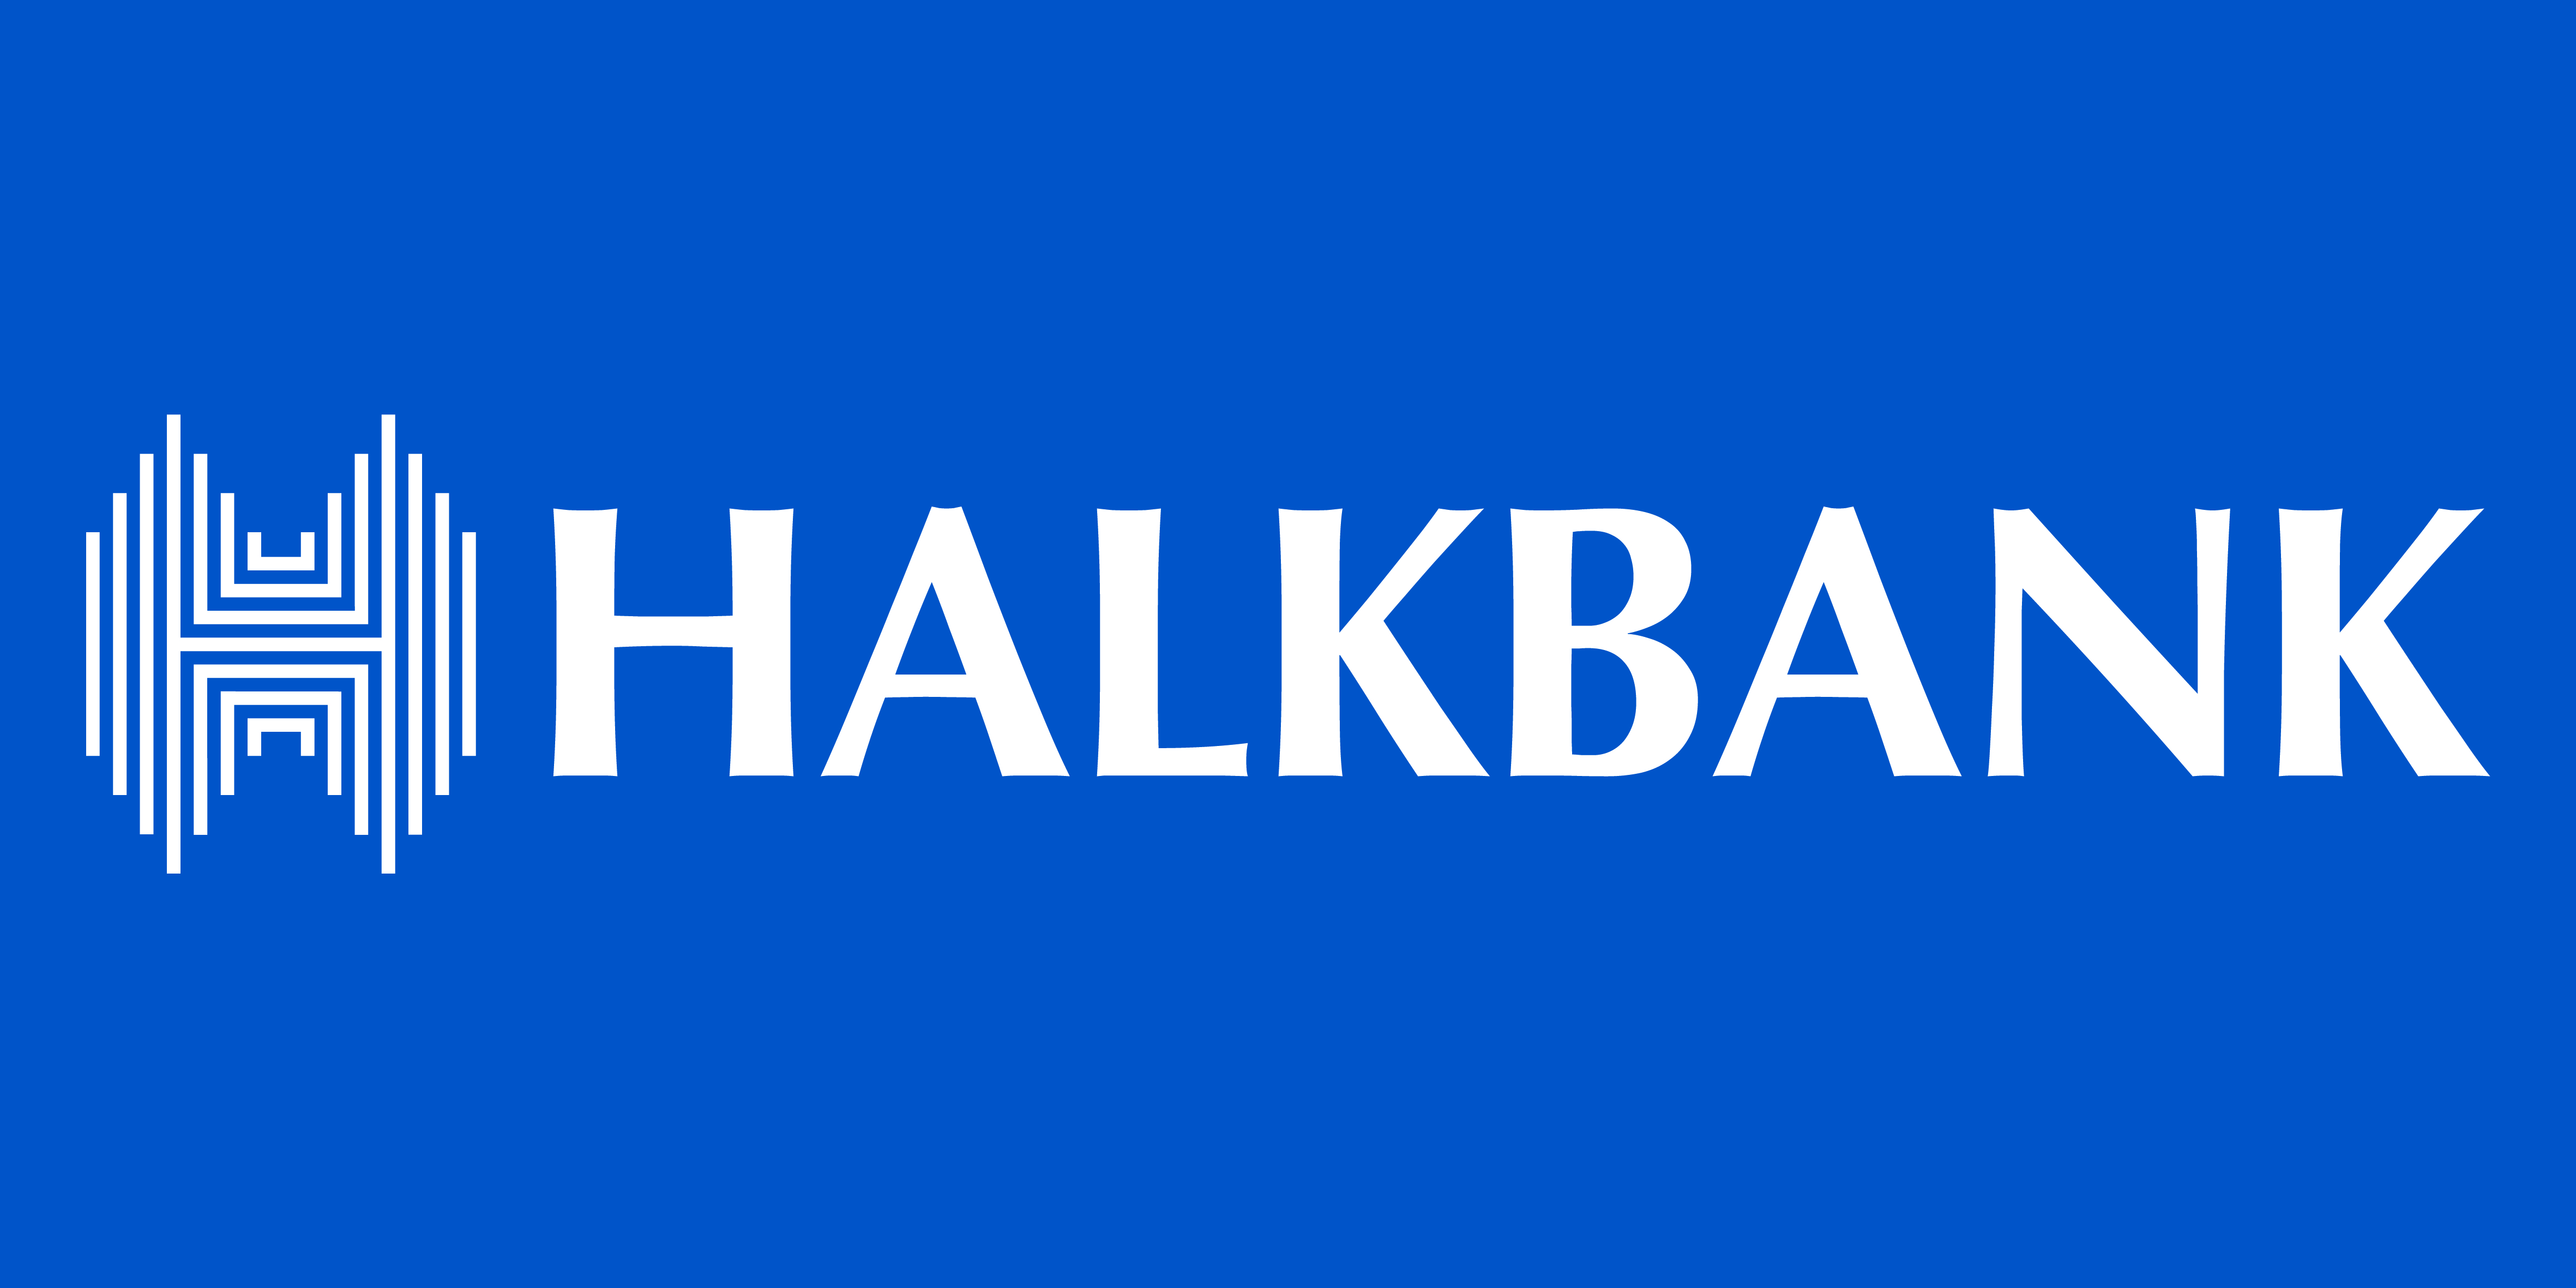 Halkbank hatalı döviz kurlarına ilişkin yazılı bir açıklama yayınladı